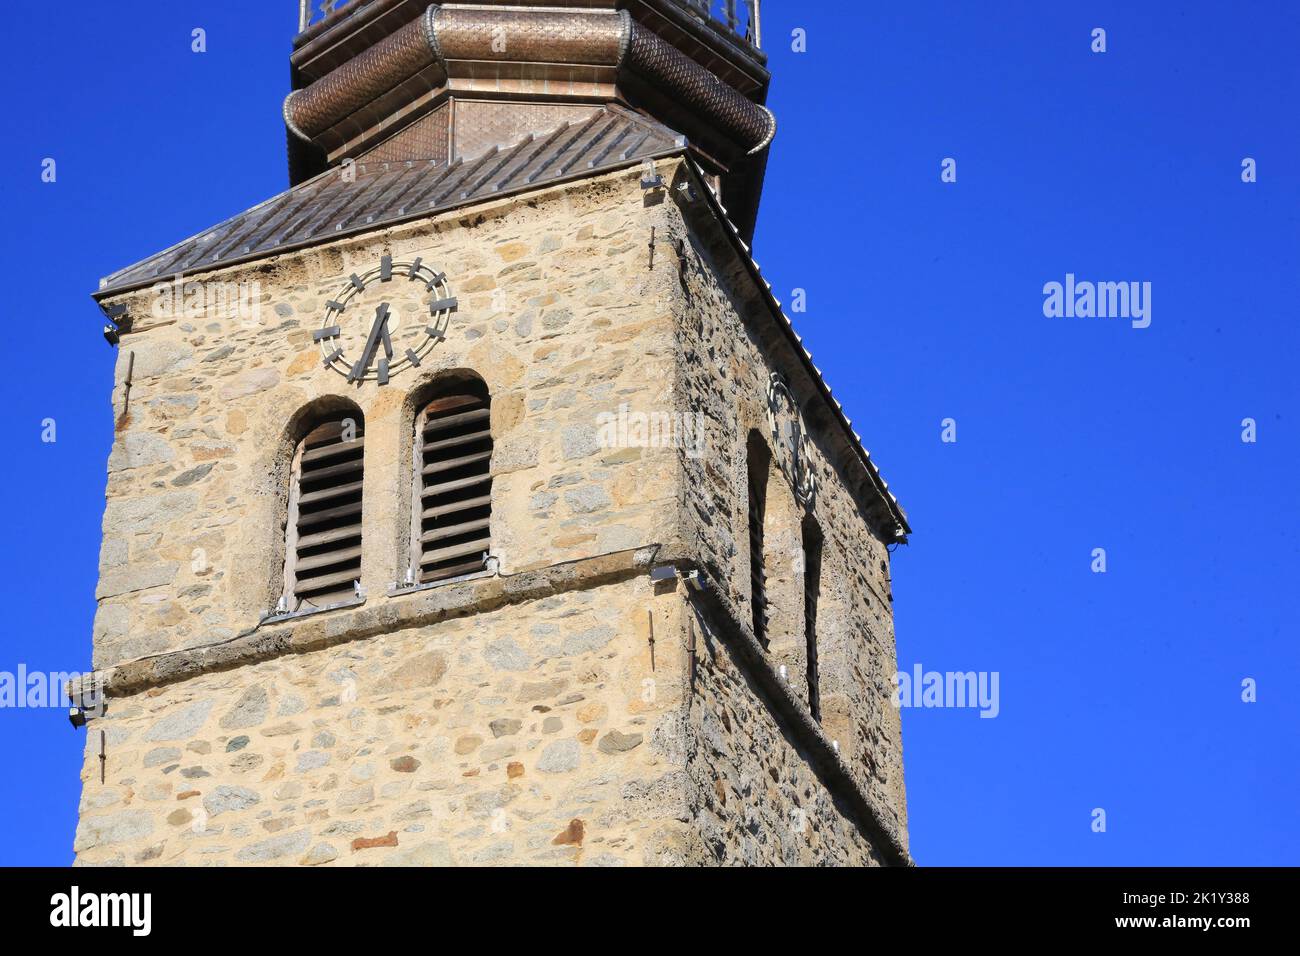 L'église Saint-Nicolas de Combloux et son clocher à bulbe classé au titre des Monuments historiques en 1971. Combloux. Alta Savoia. Auvergne-Rhône-al Foto Stock